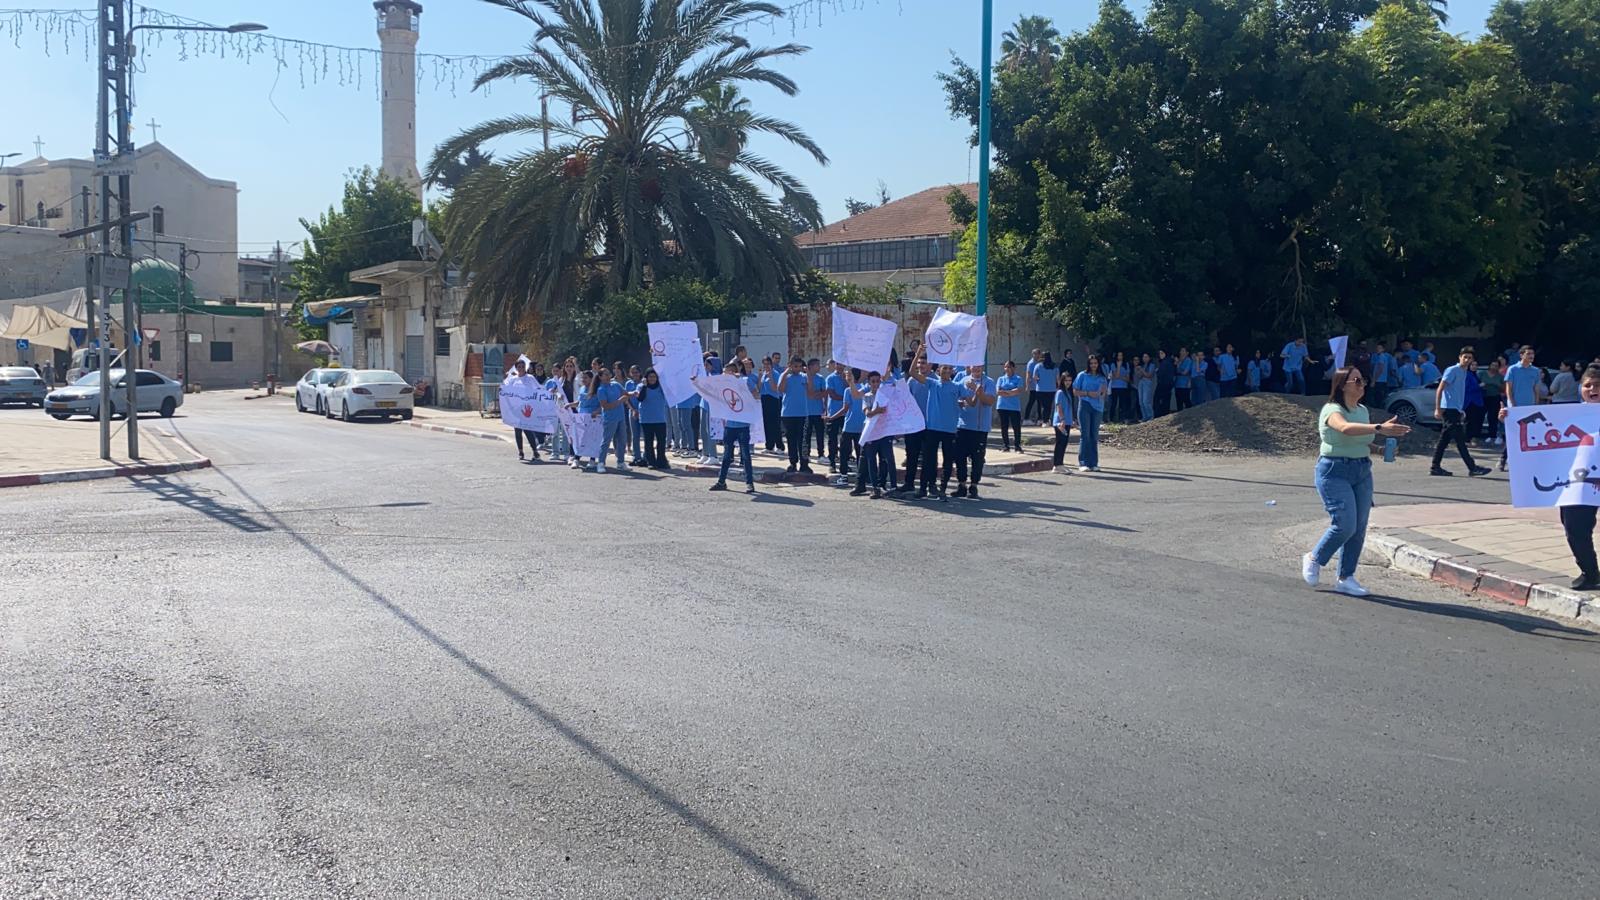  اللد: طلاب مدرسة سانت جورج يُنظمون وقفة احتجاجية ضد العنف